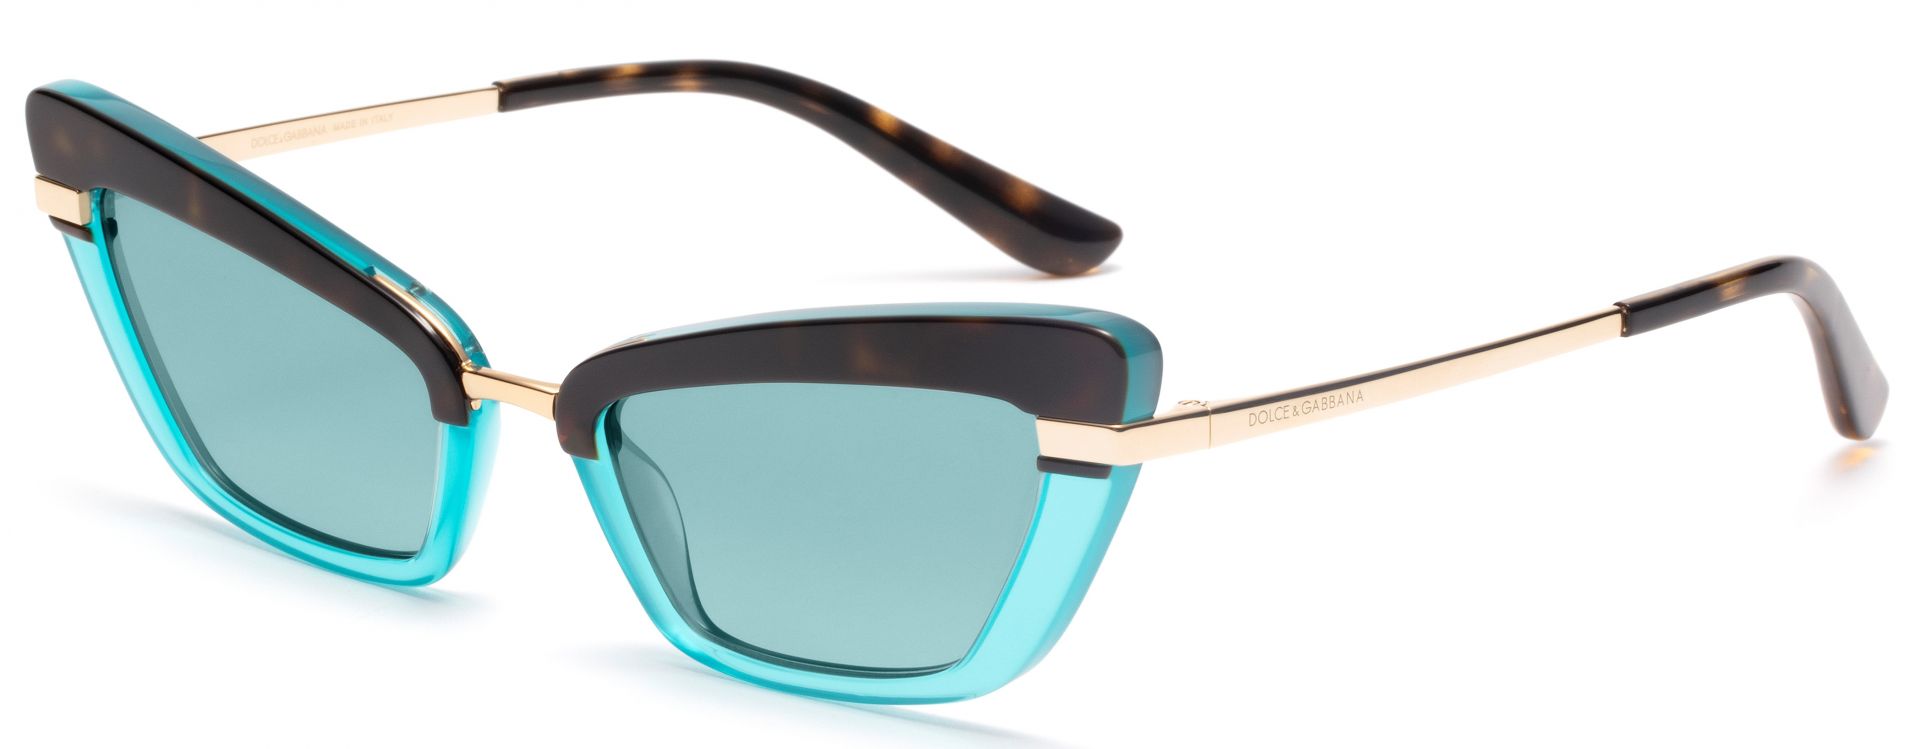 Все оттенки радуги: солнцезащитные очки с цветными линзами – тренд лета 2020